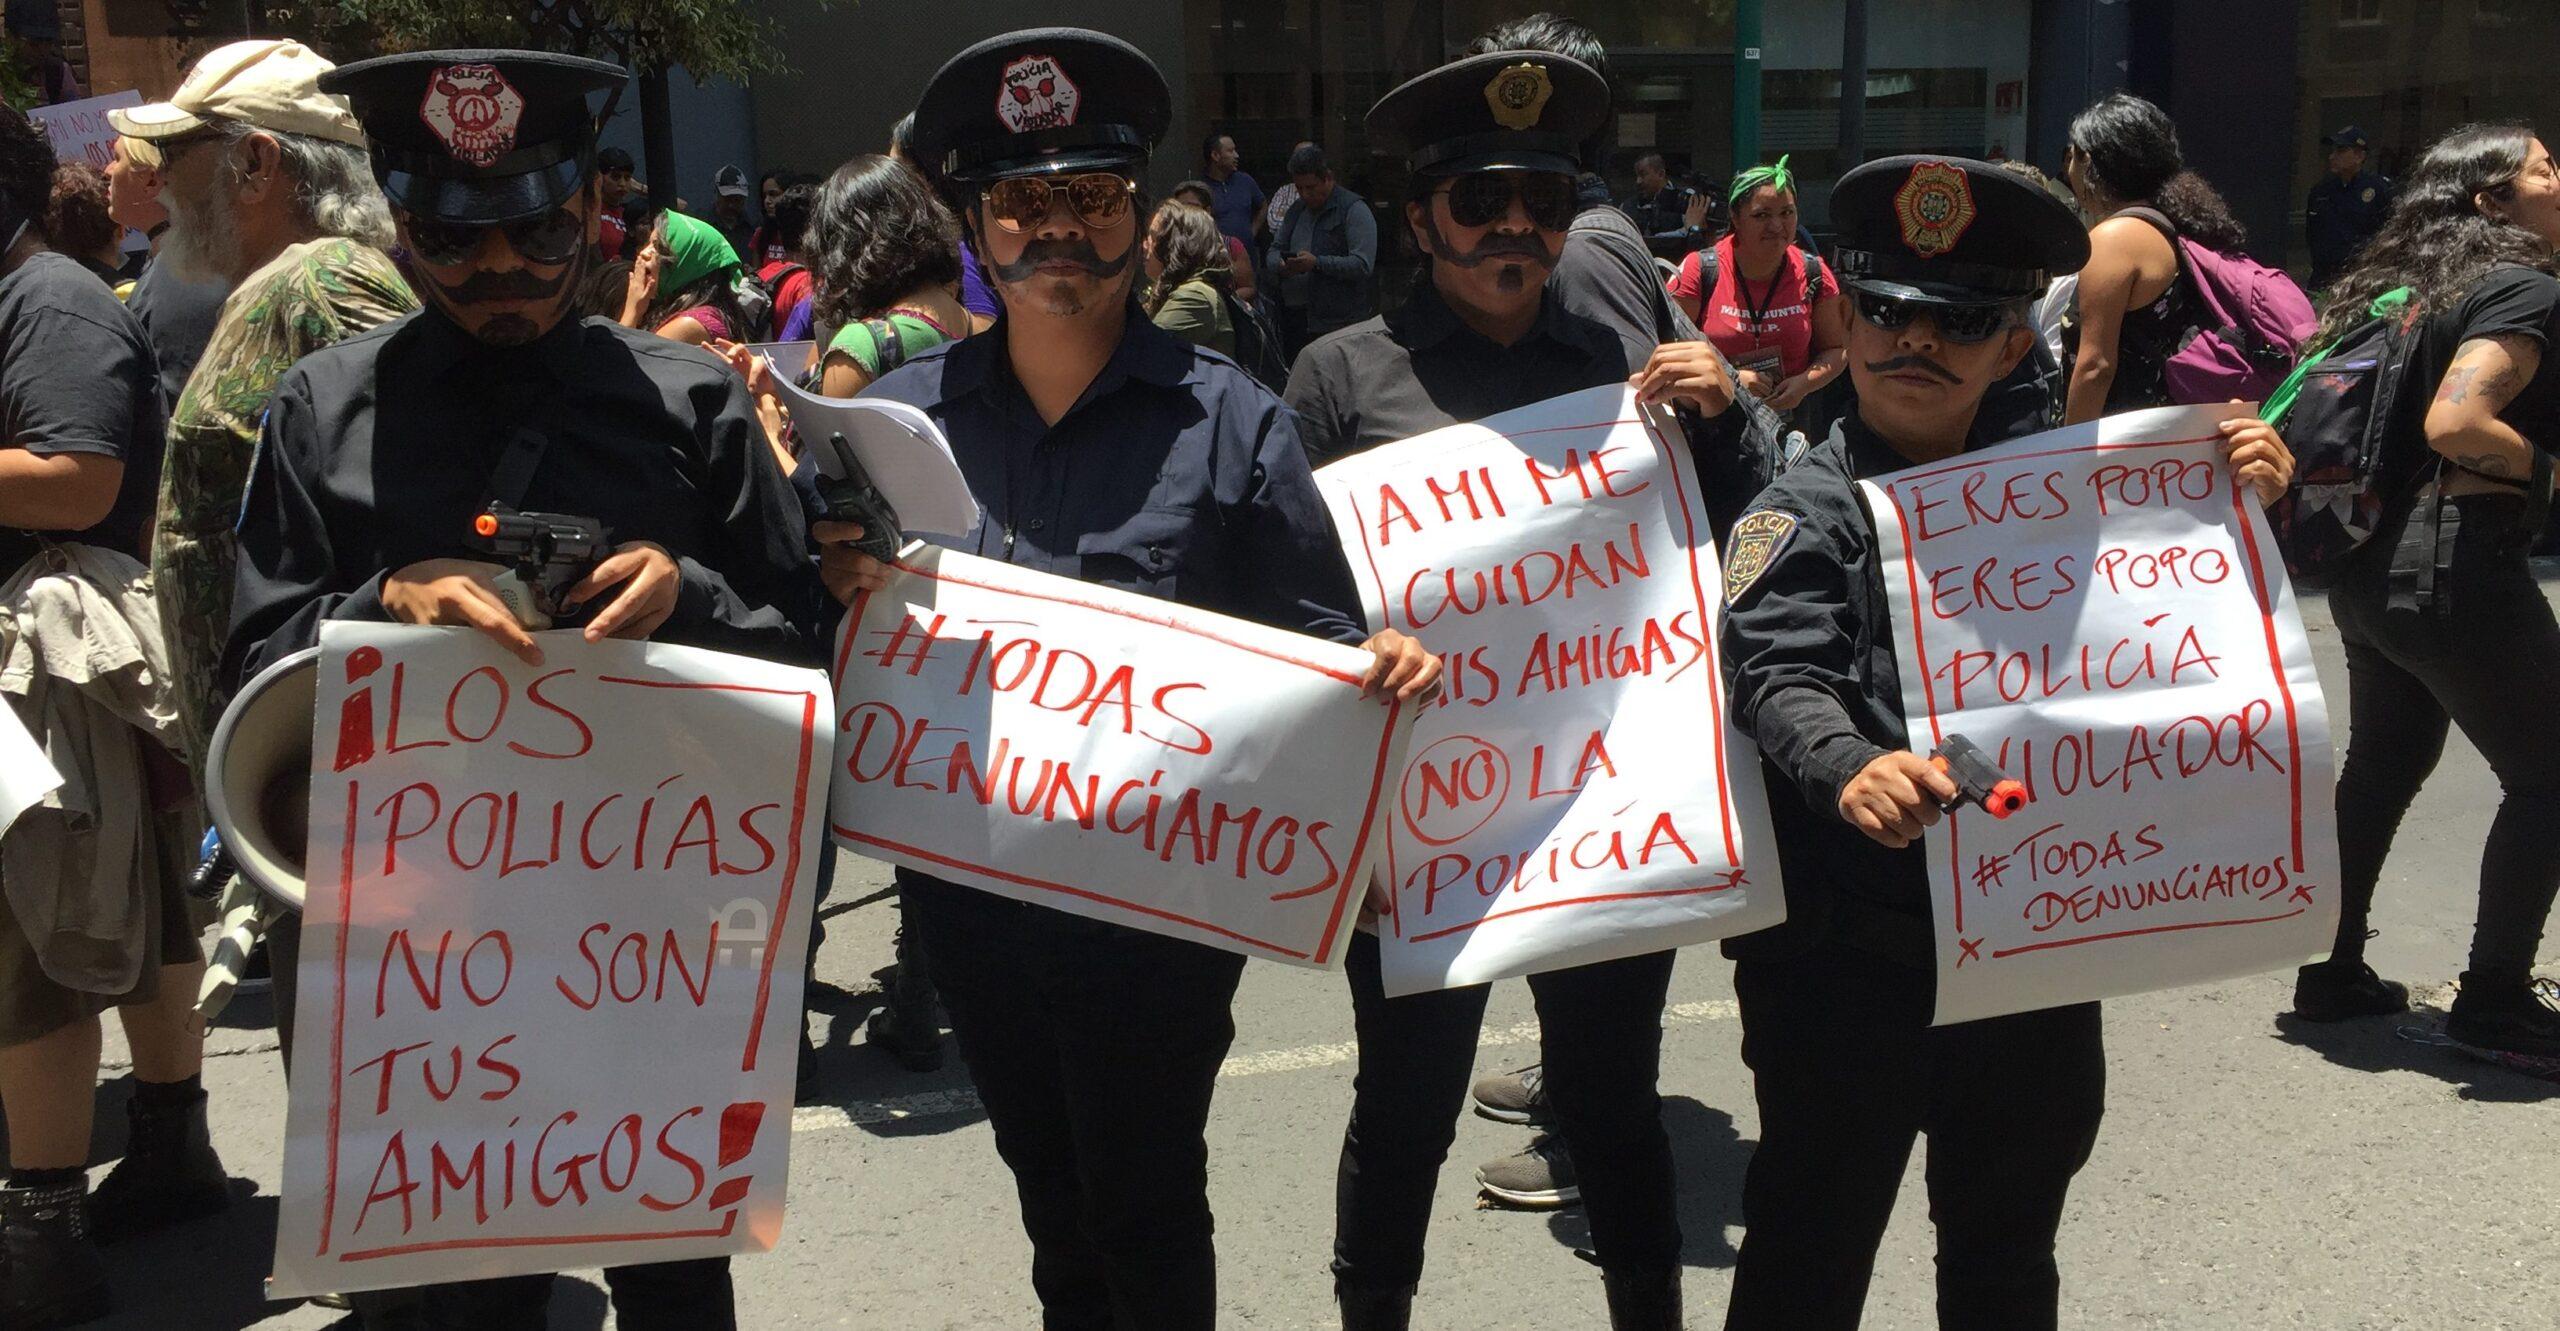 Diamantina contra la violencia: mujeres llaman a protesta el viernes en varias ciudades del país